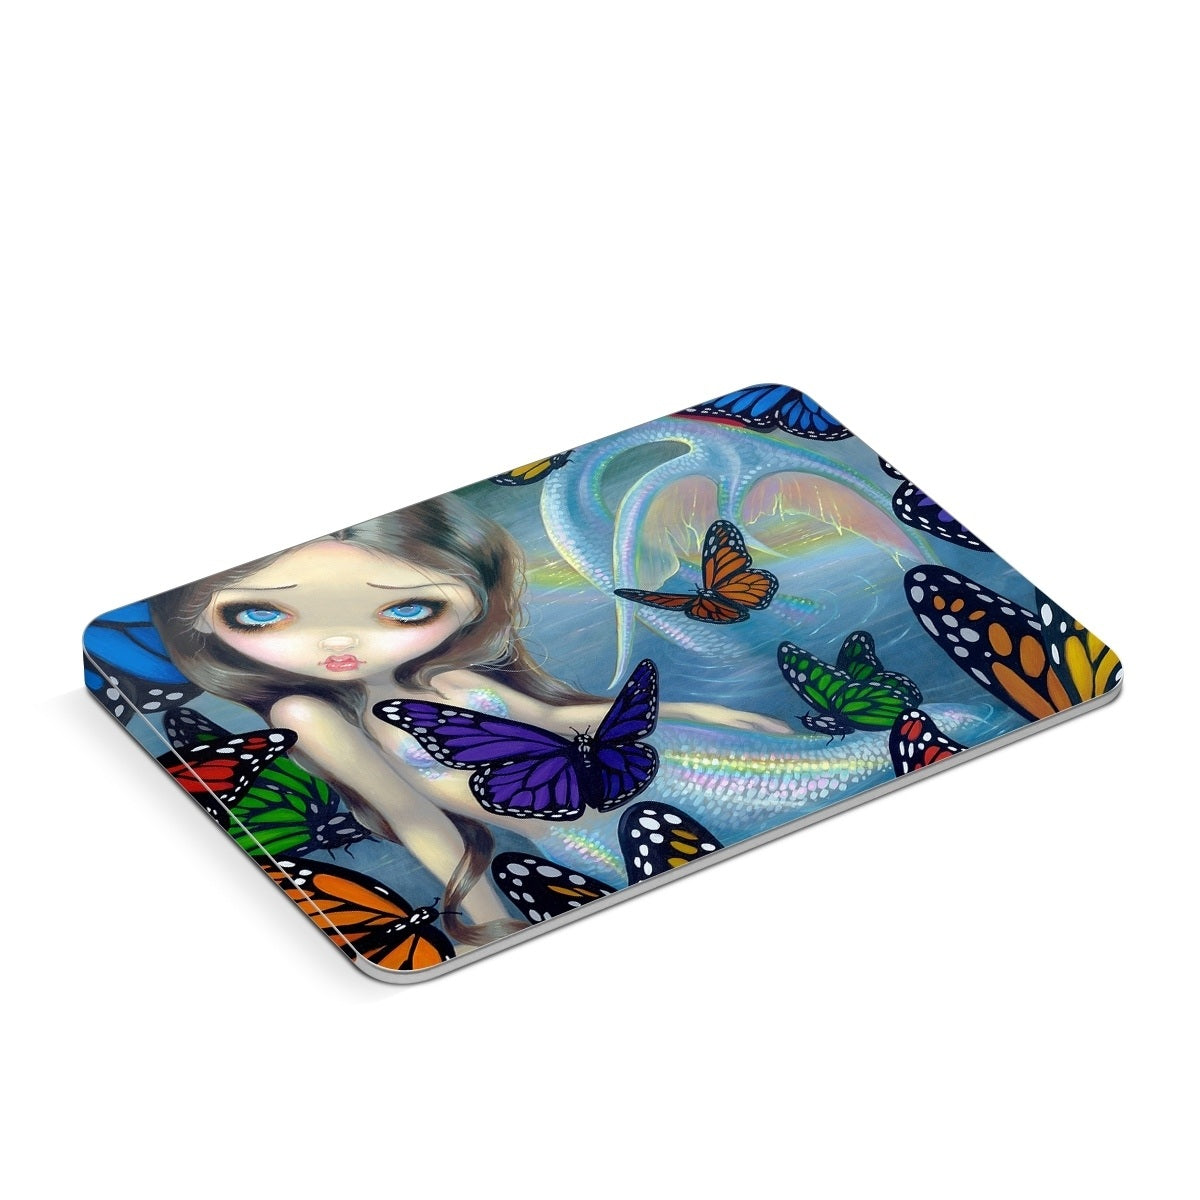 Mermaid - Apple Magic Trackpad Skin